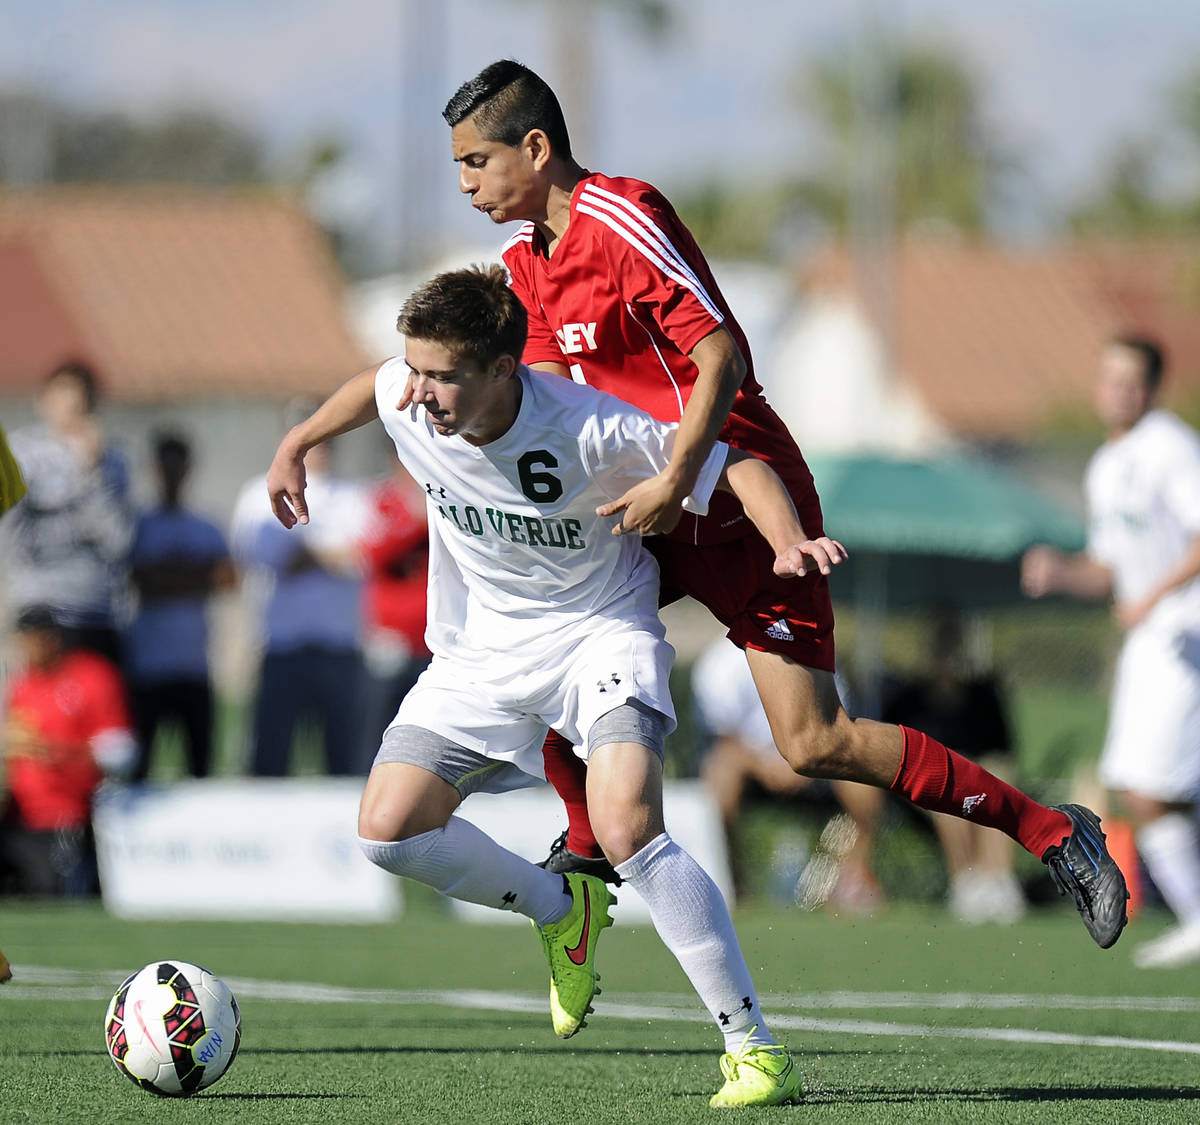 Valley midfielder John Cerda challenges Palo Verde midfielder Connor Ryan (6) during the Divisi ...